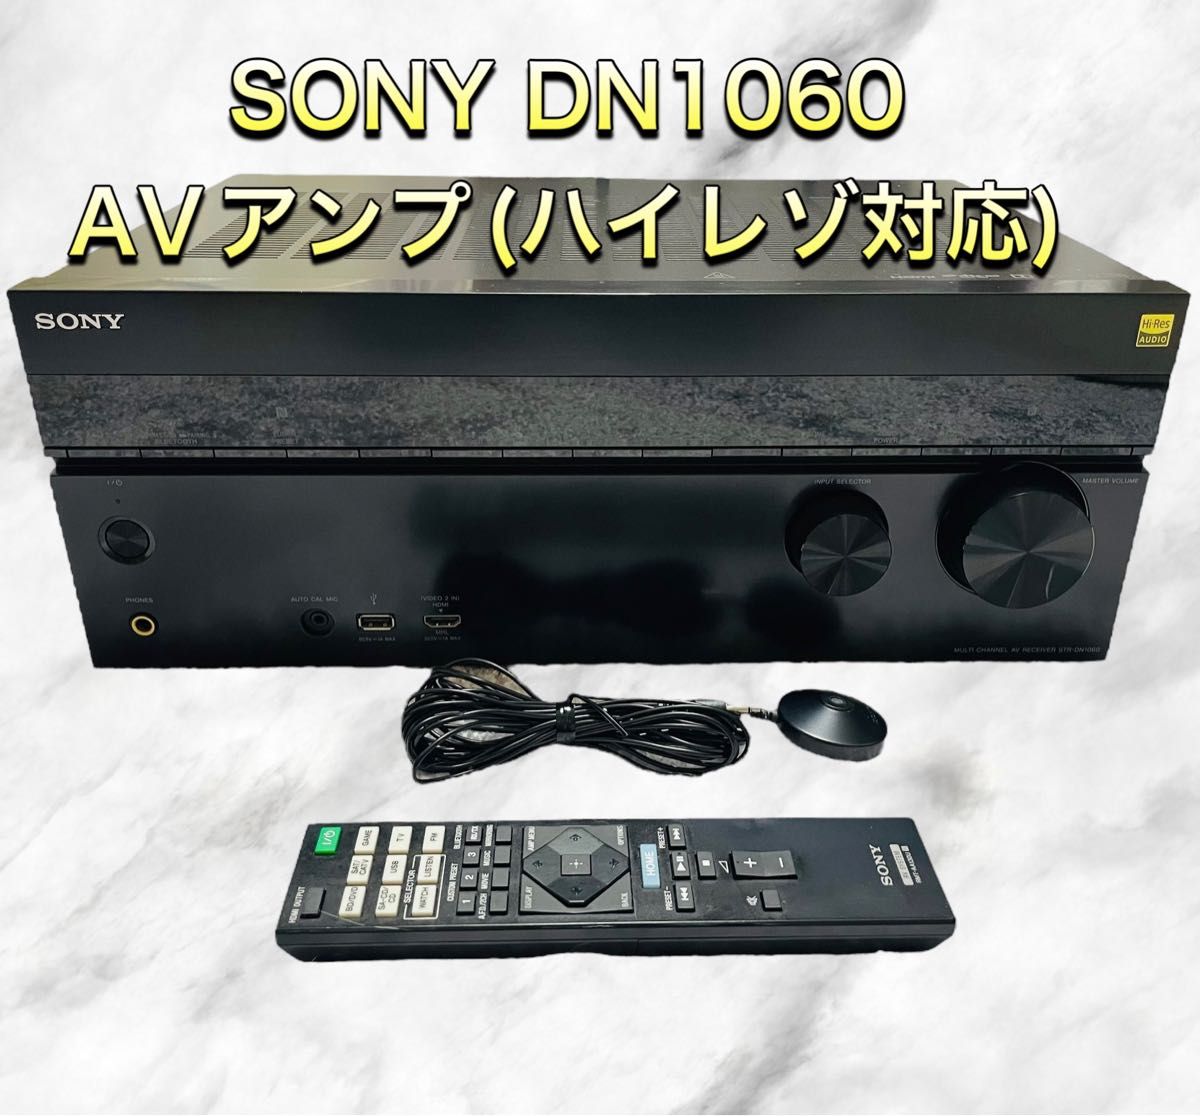 SONY STR-DN1060 7.1ch AVアンプ ハイレゾ対応